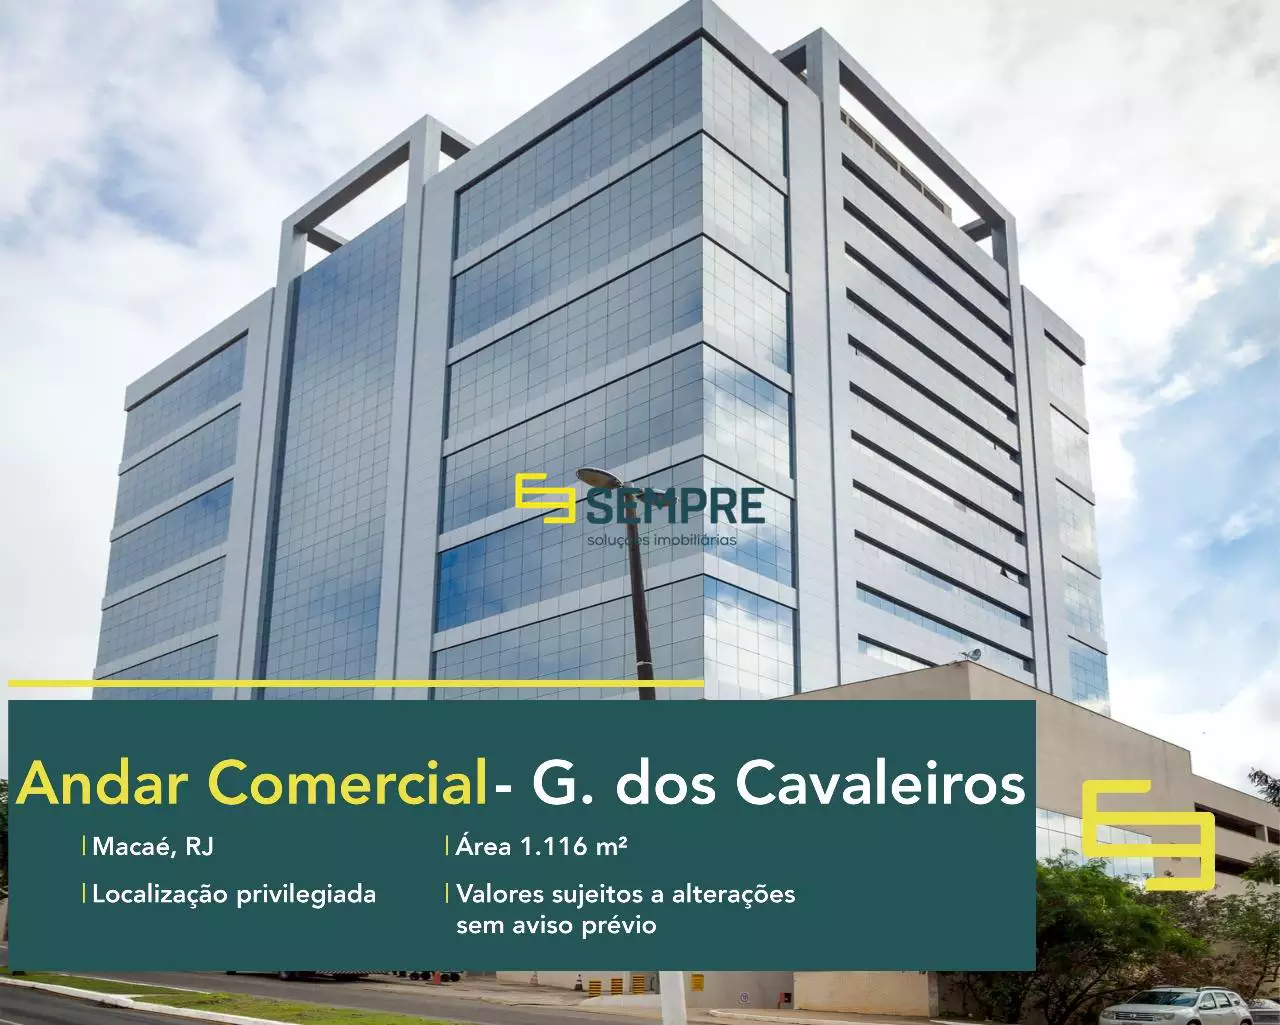 Andar corrido no Edifício The Corporate para locação no RJ, excelente localização. O estabelecimento comercial conta com área de 1.116 m².